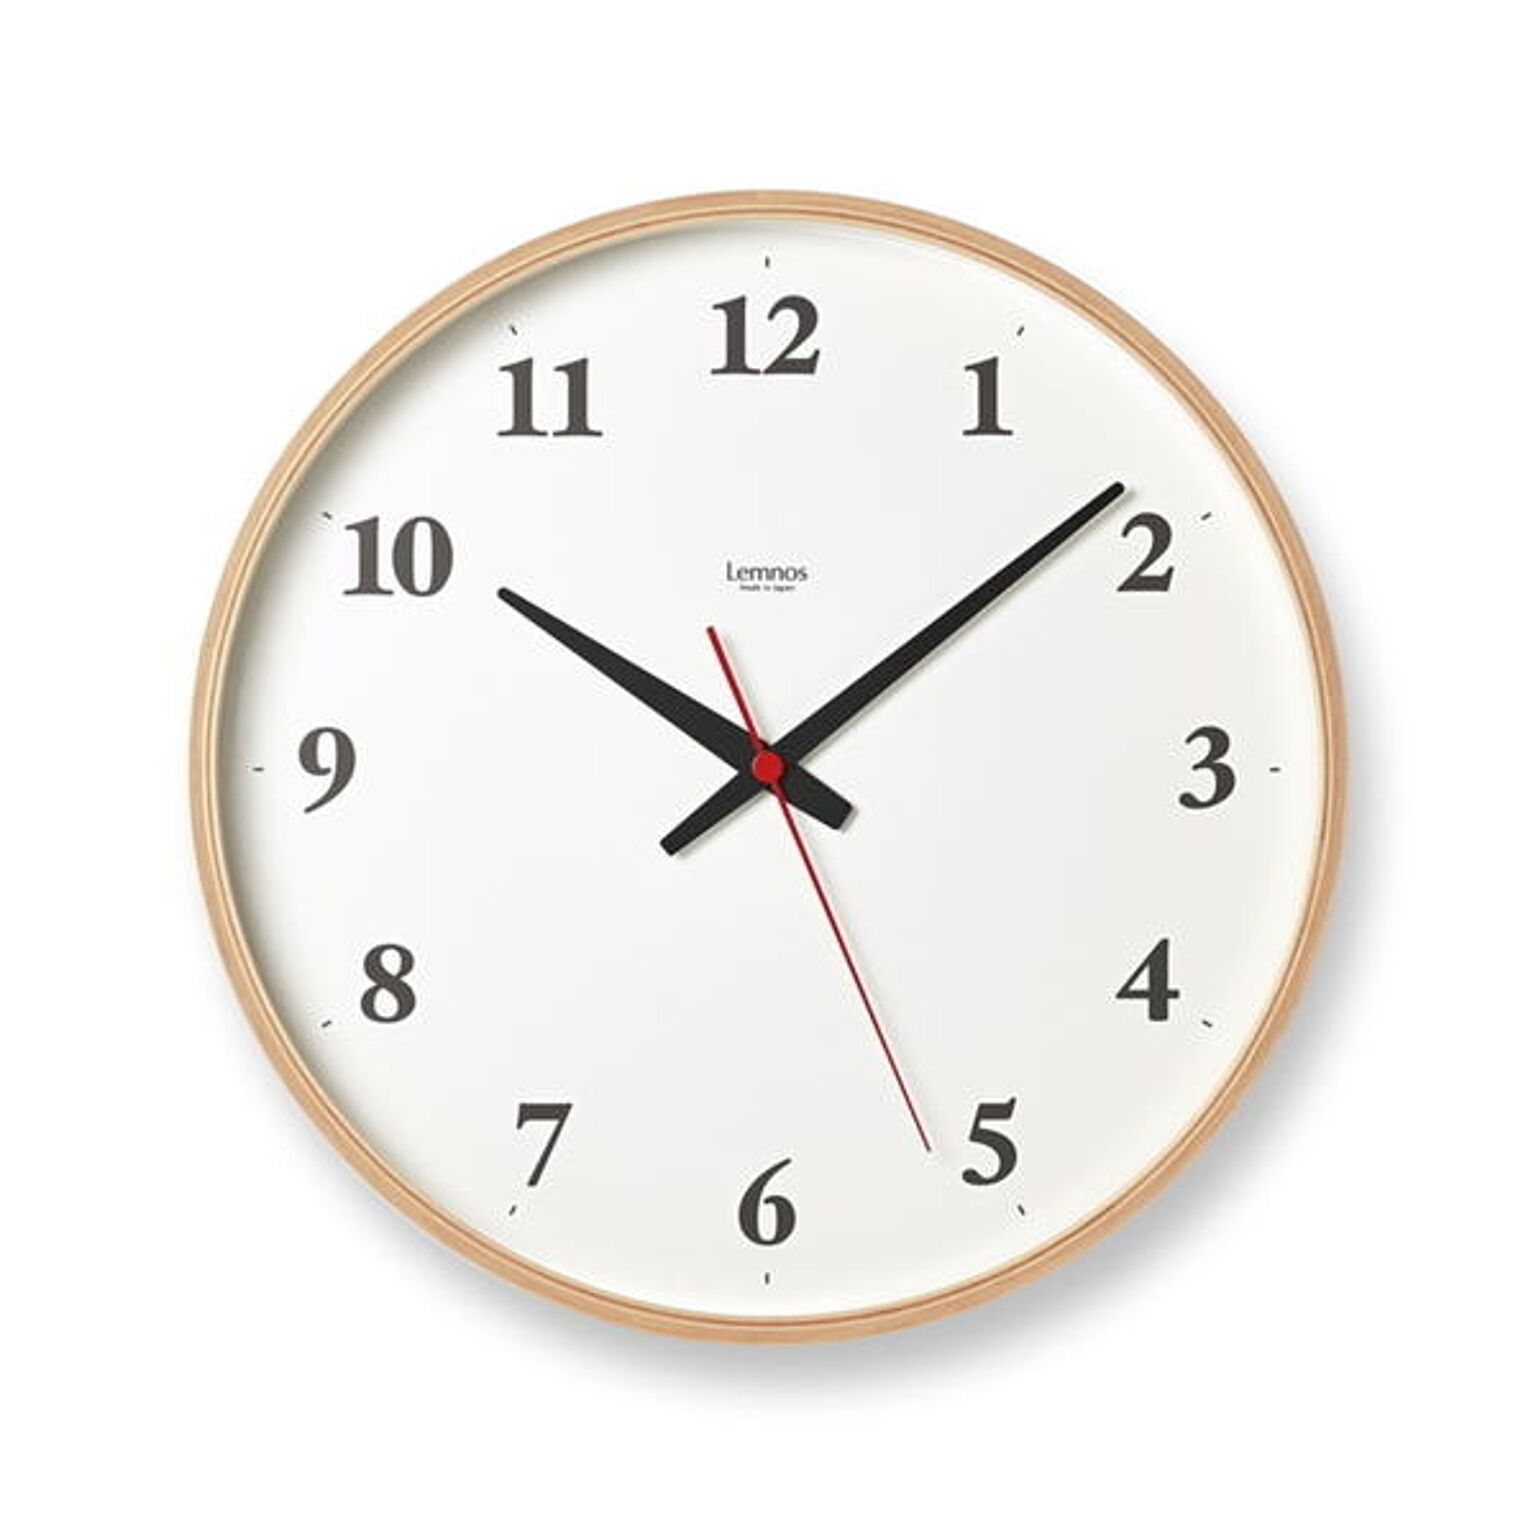 掛け時計 おしゃれ 北欧 時計 壁掛け 木製 壁掛け時計 Centaur Clock セントールクロック シンプル 静か 音がしない 静音 ナチュラル ブラウン スイープムーブメント オシャレ